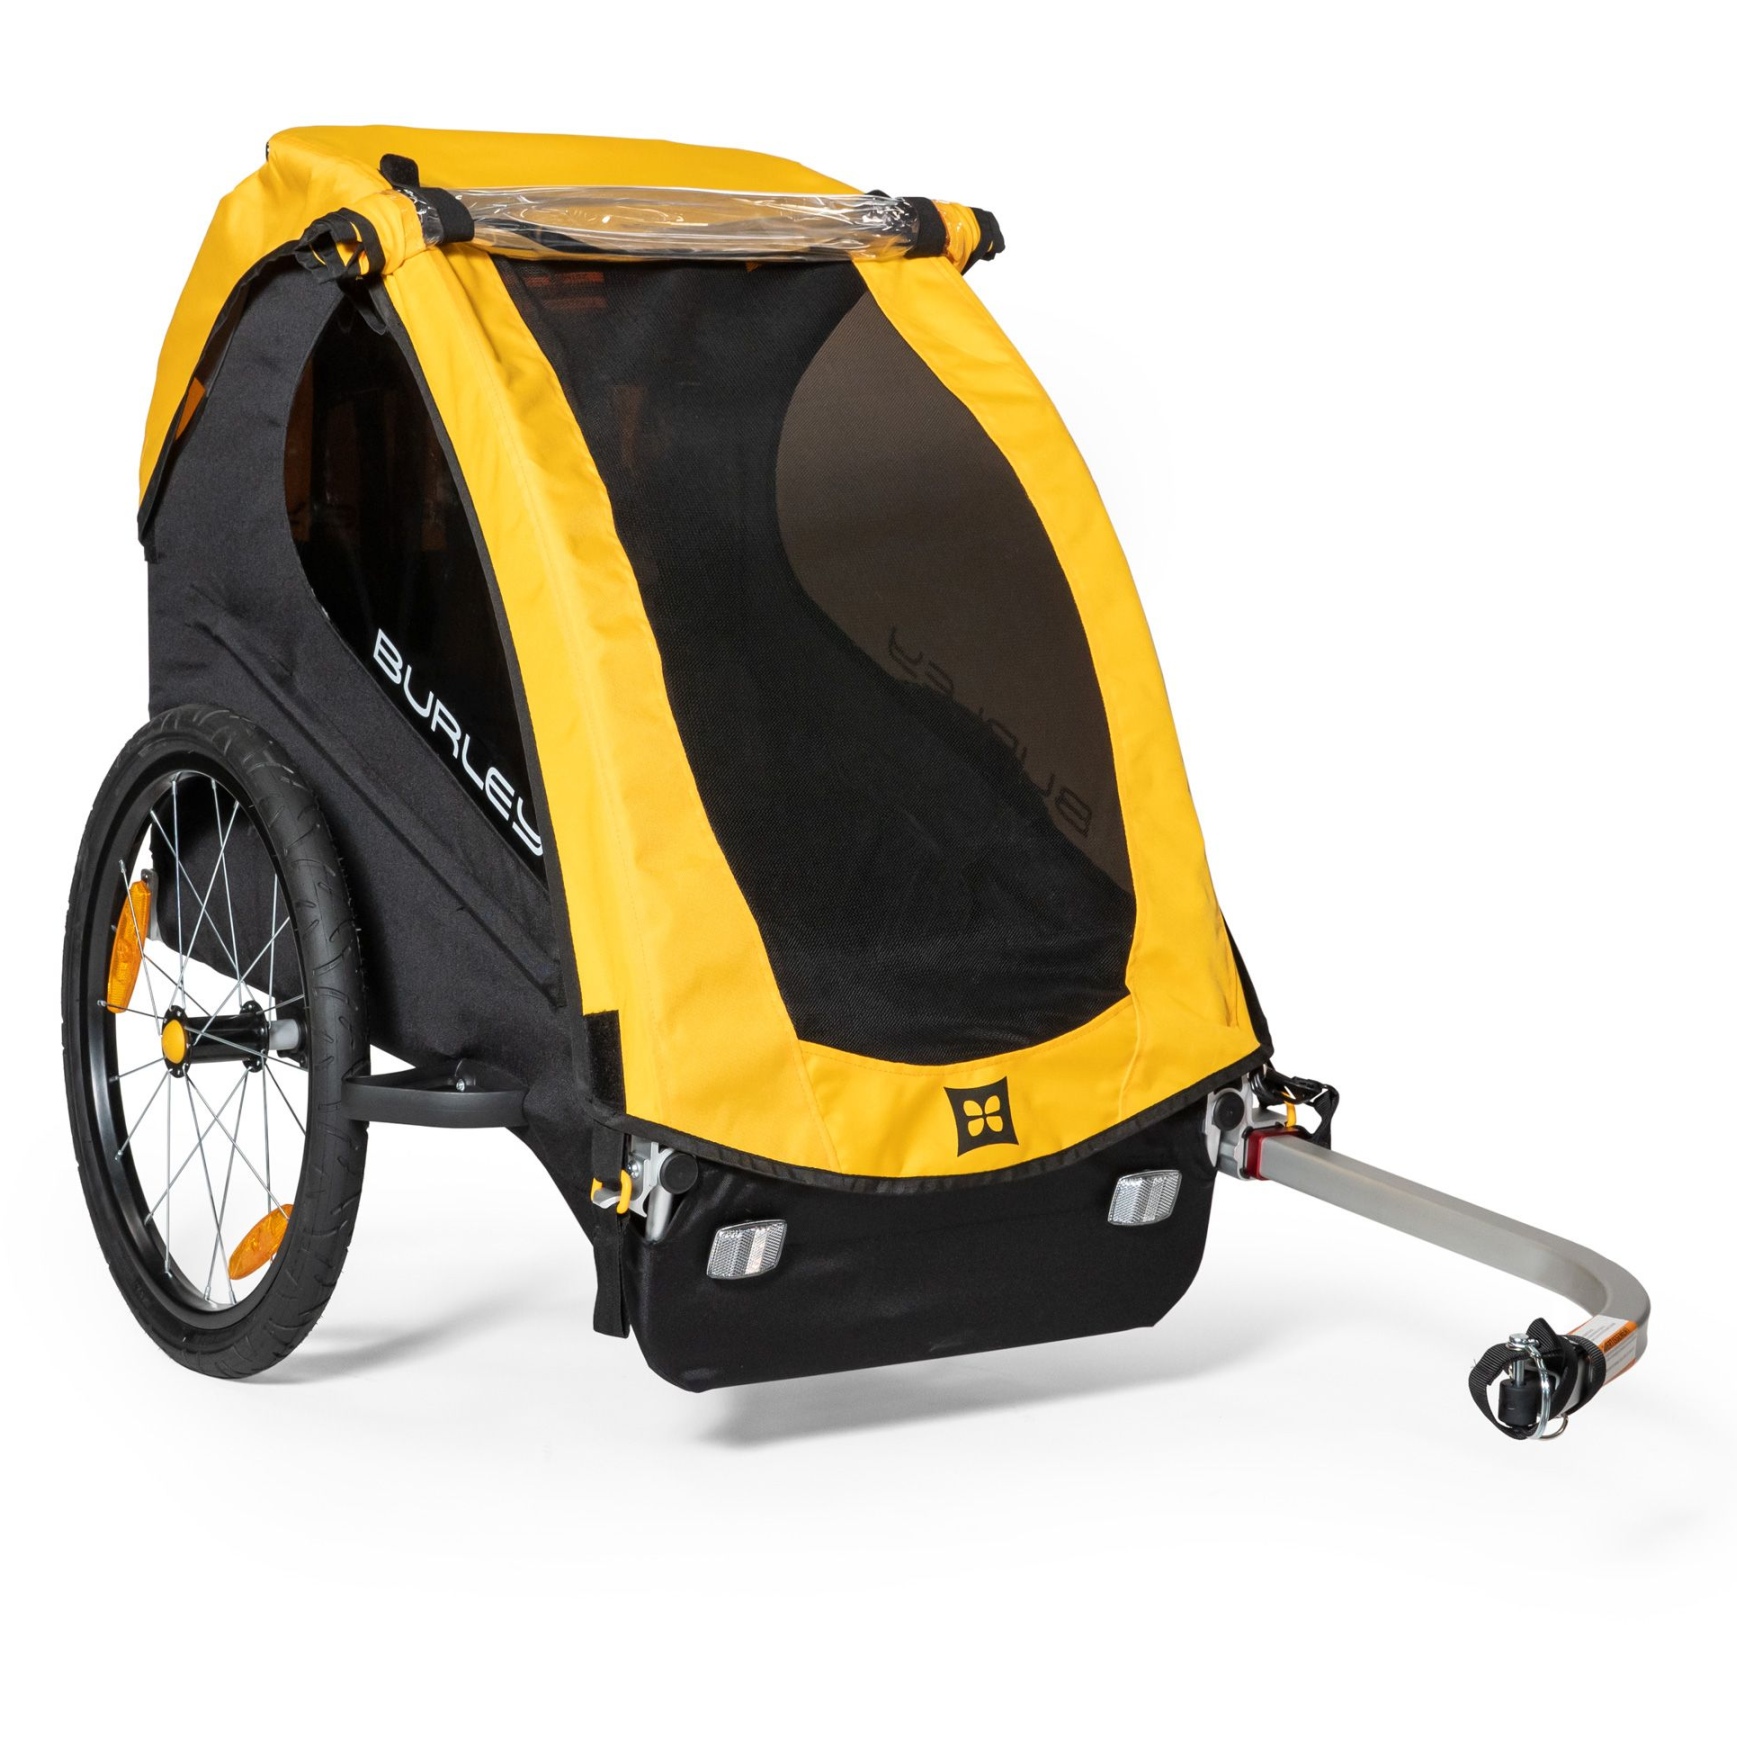 Produktbild von Burley Bee Single Fahrradanhänger für 1 Kind - gelb